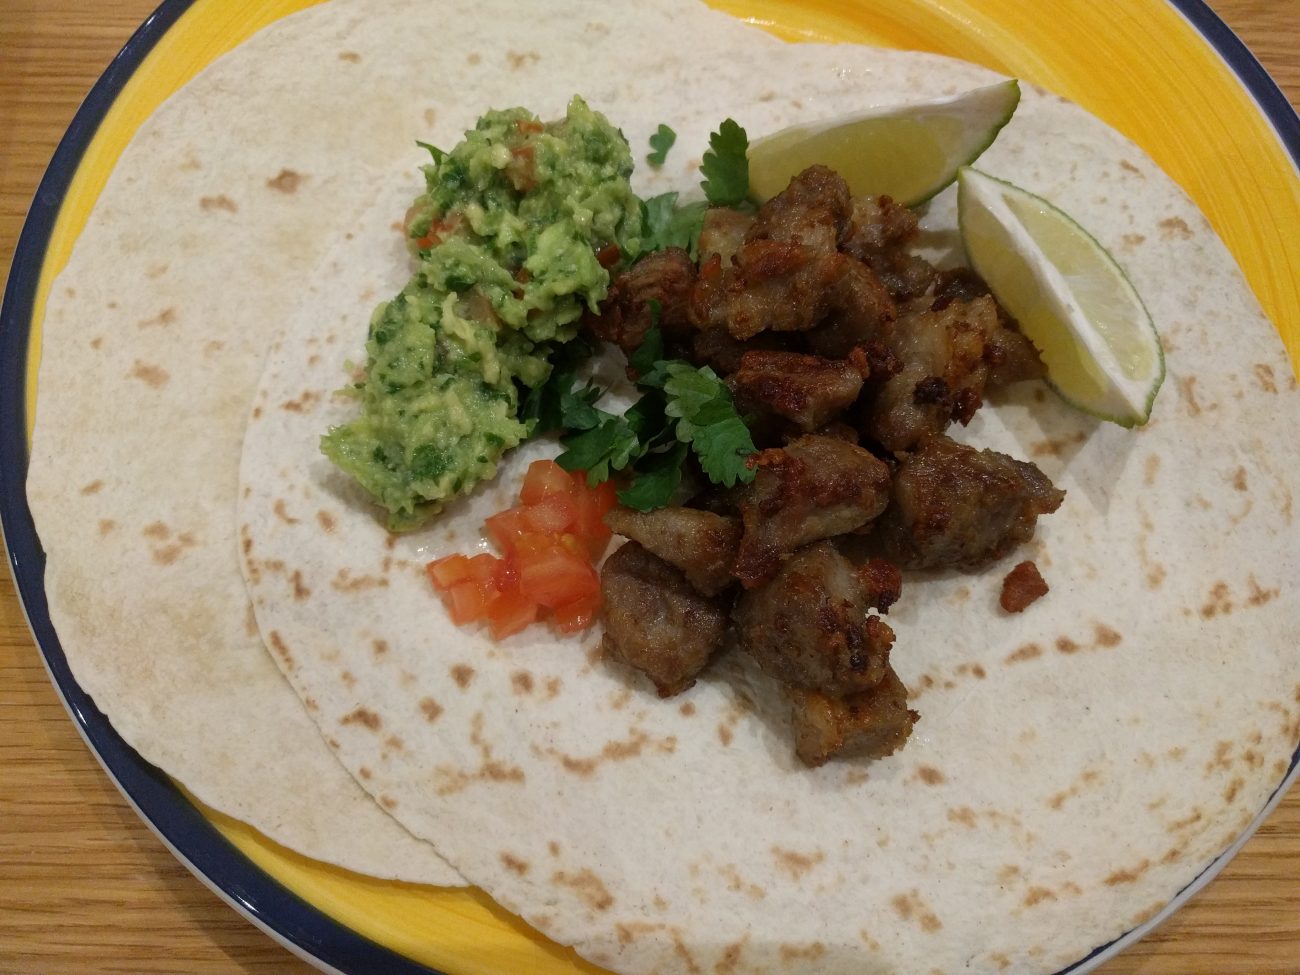 Carnitas Tacos with guacamole